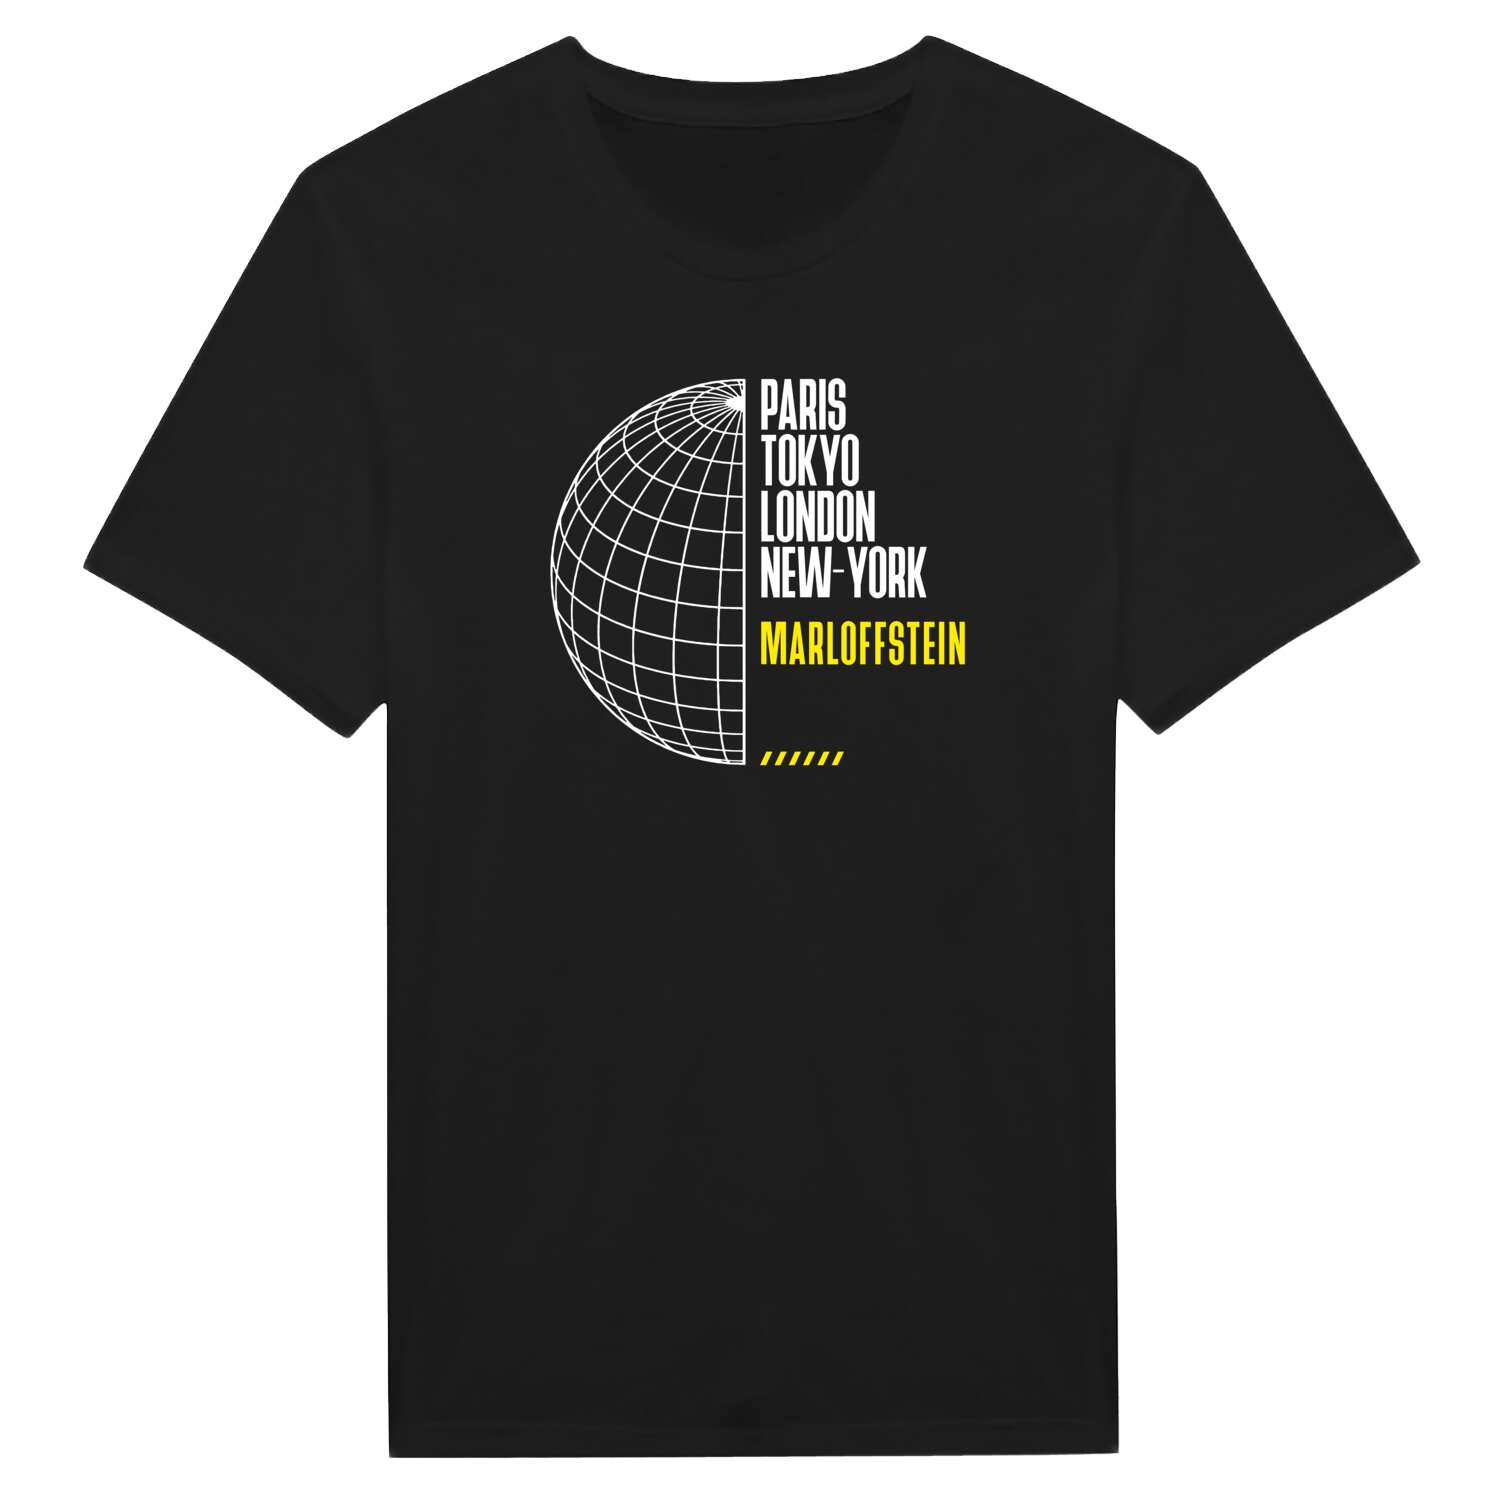 Marloffstein T-Shirt »Paris Tokyo London«